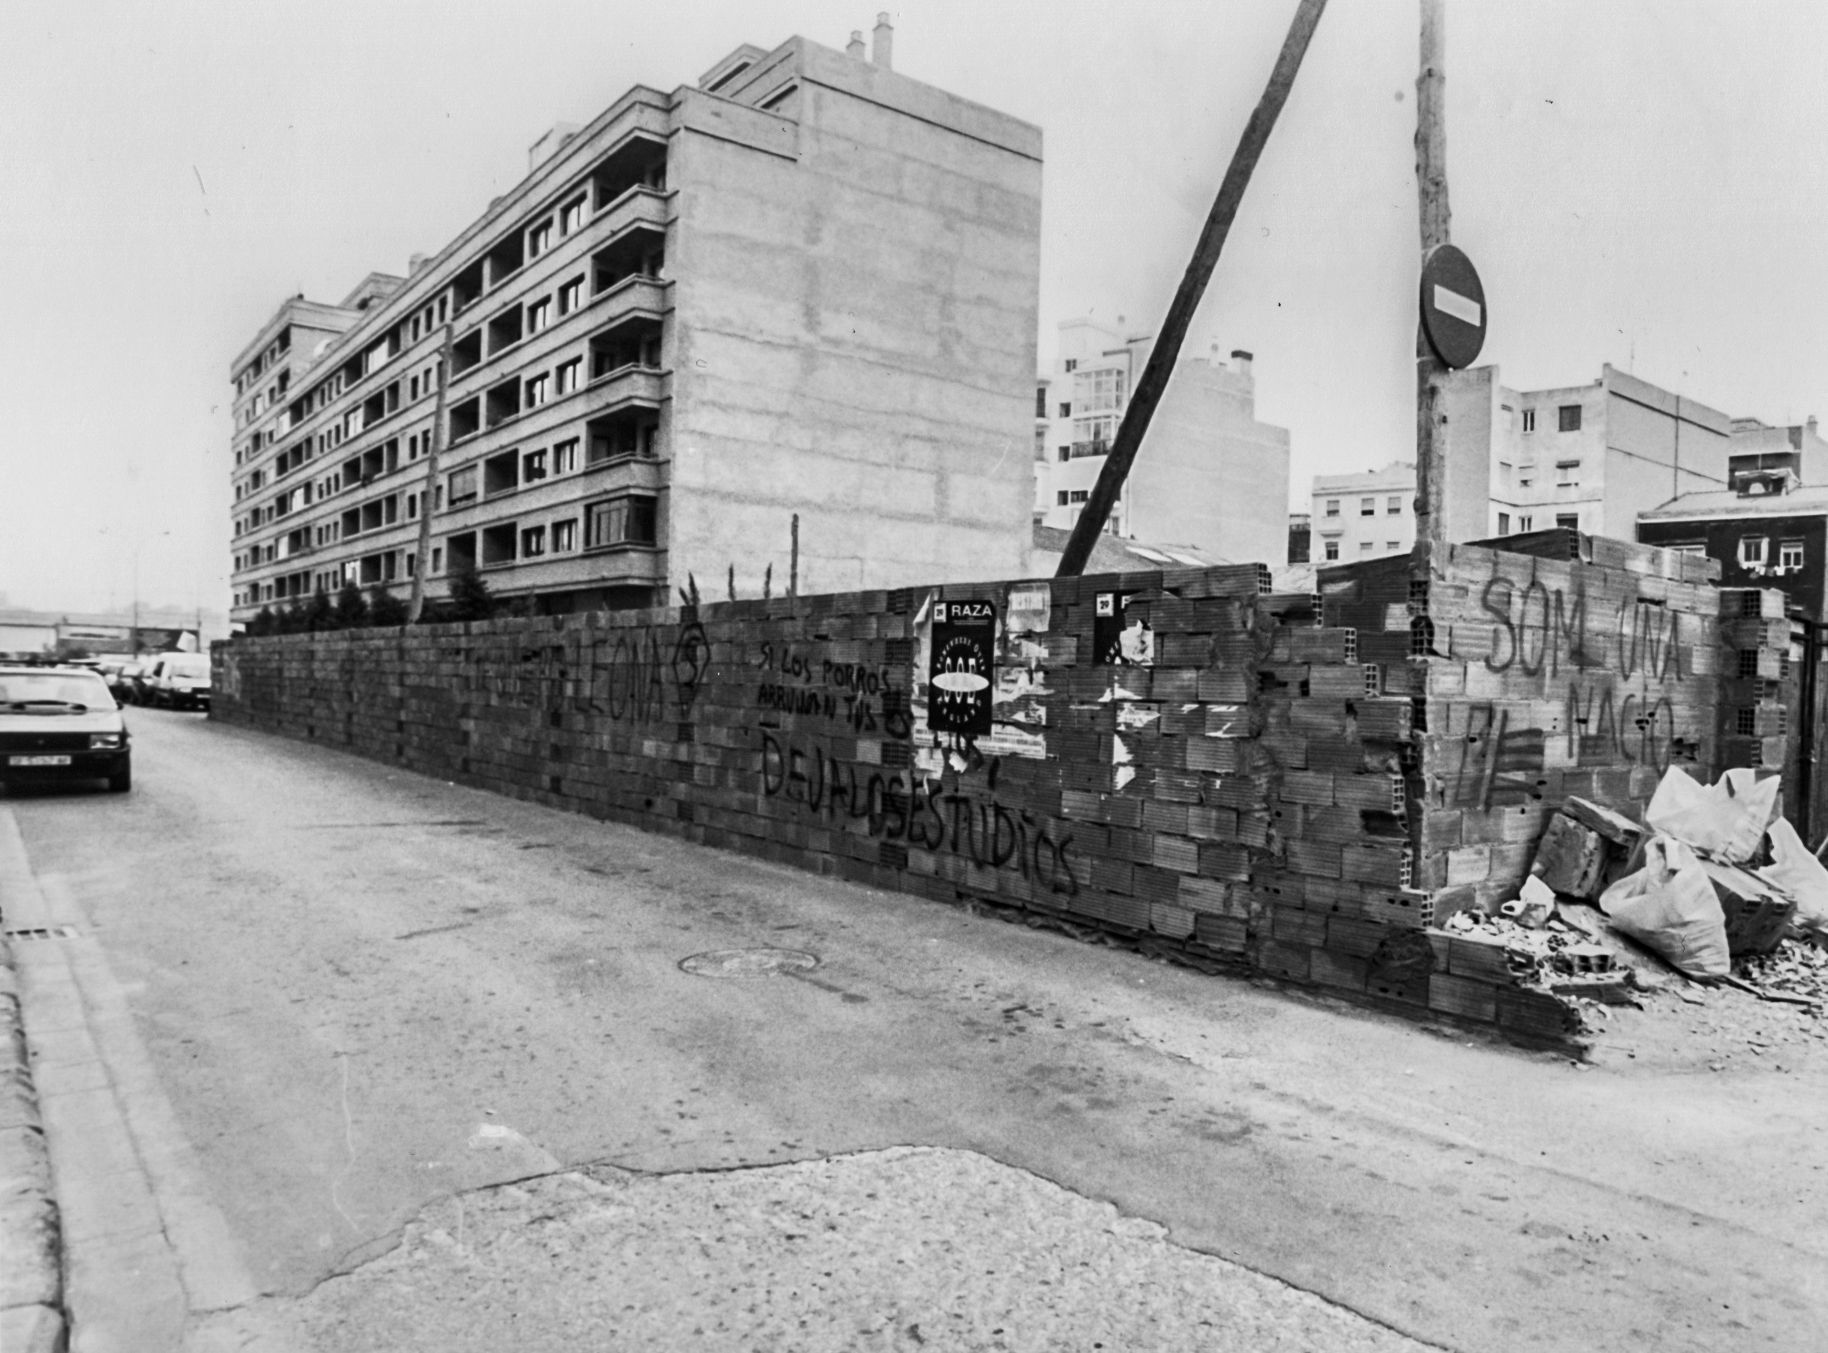 Fotos de la València desaparecida: El Patraix de los 80 y 90